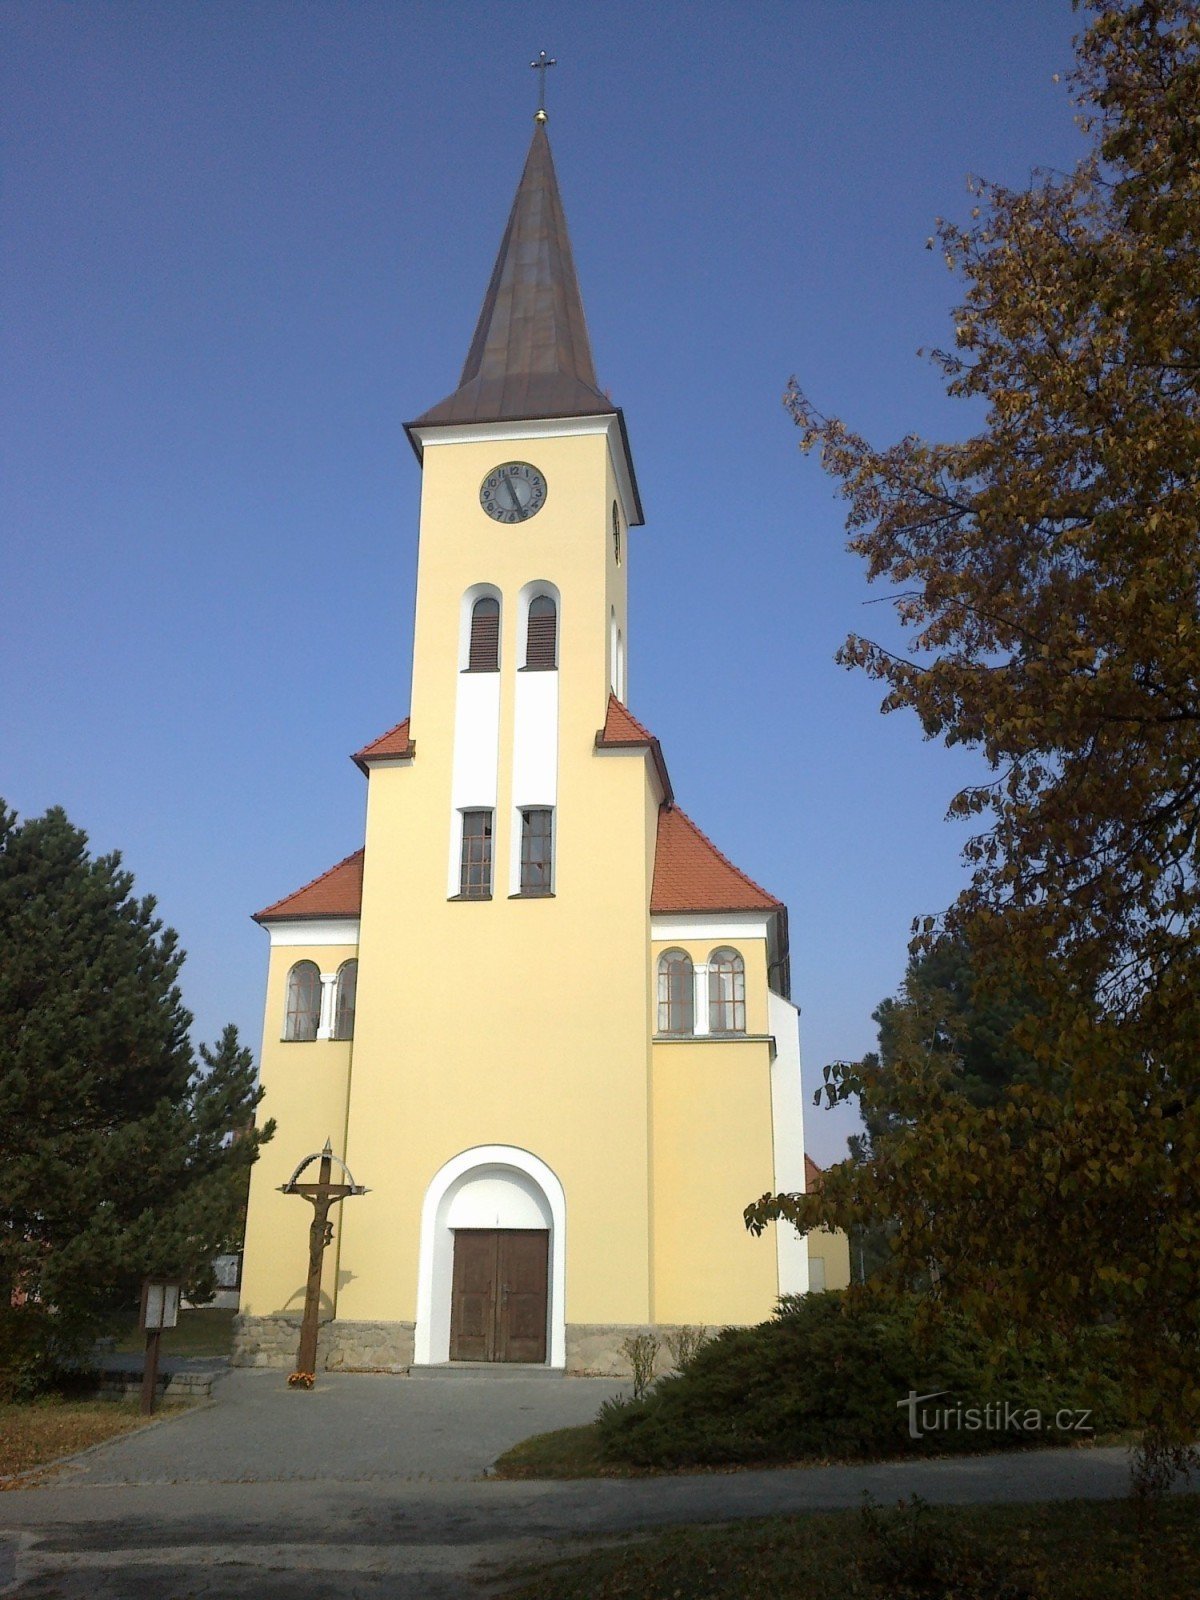 La chiesa di Vrbic.